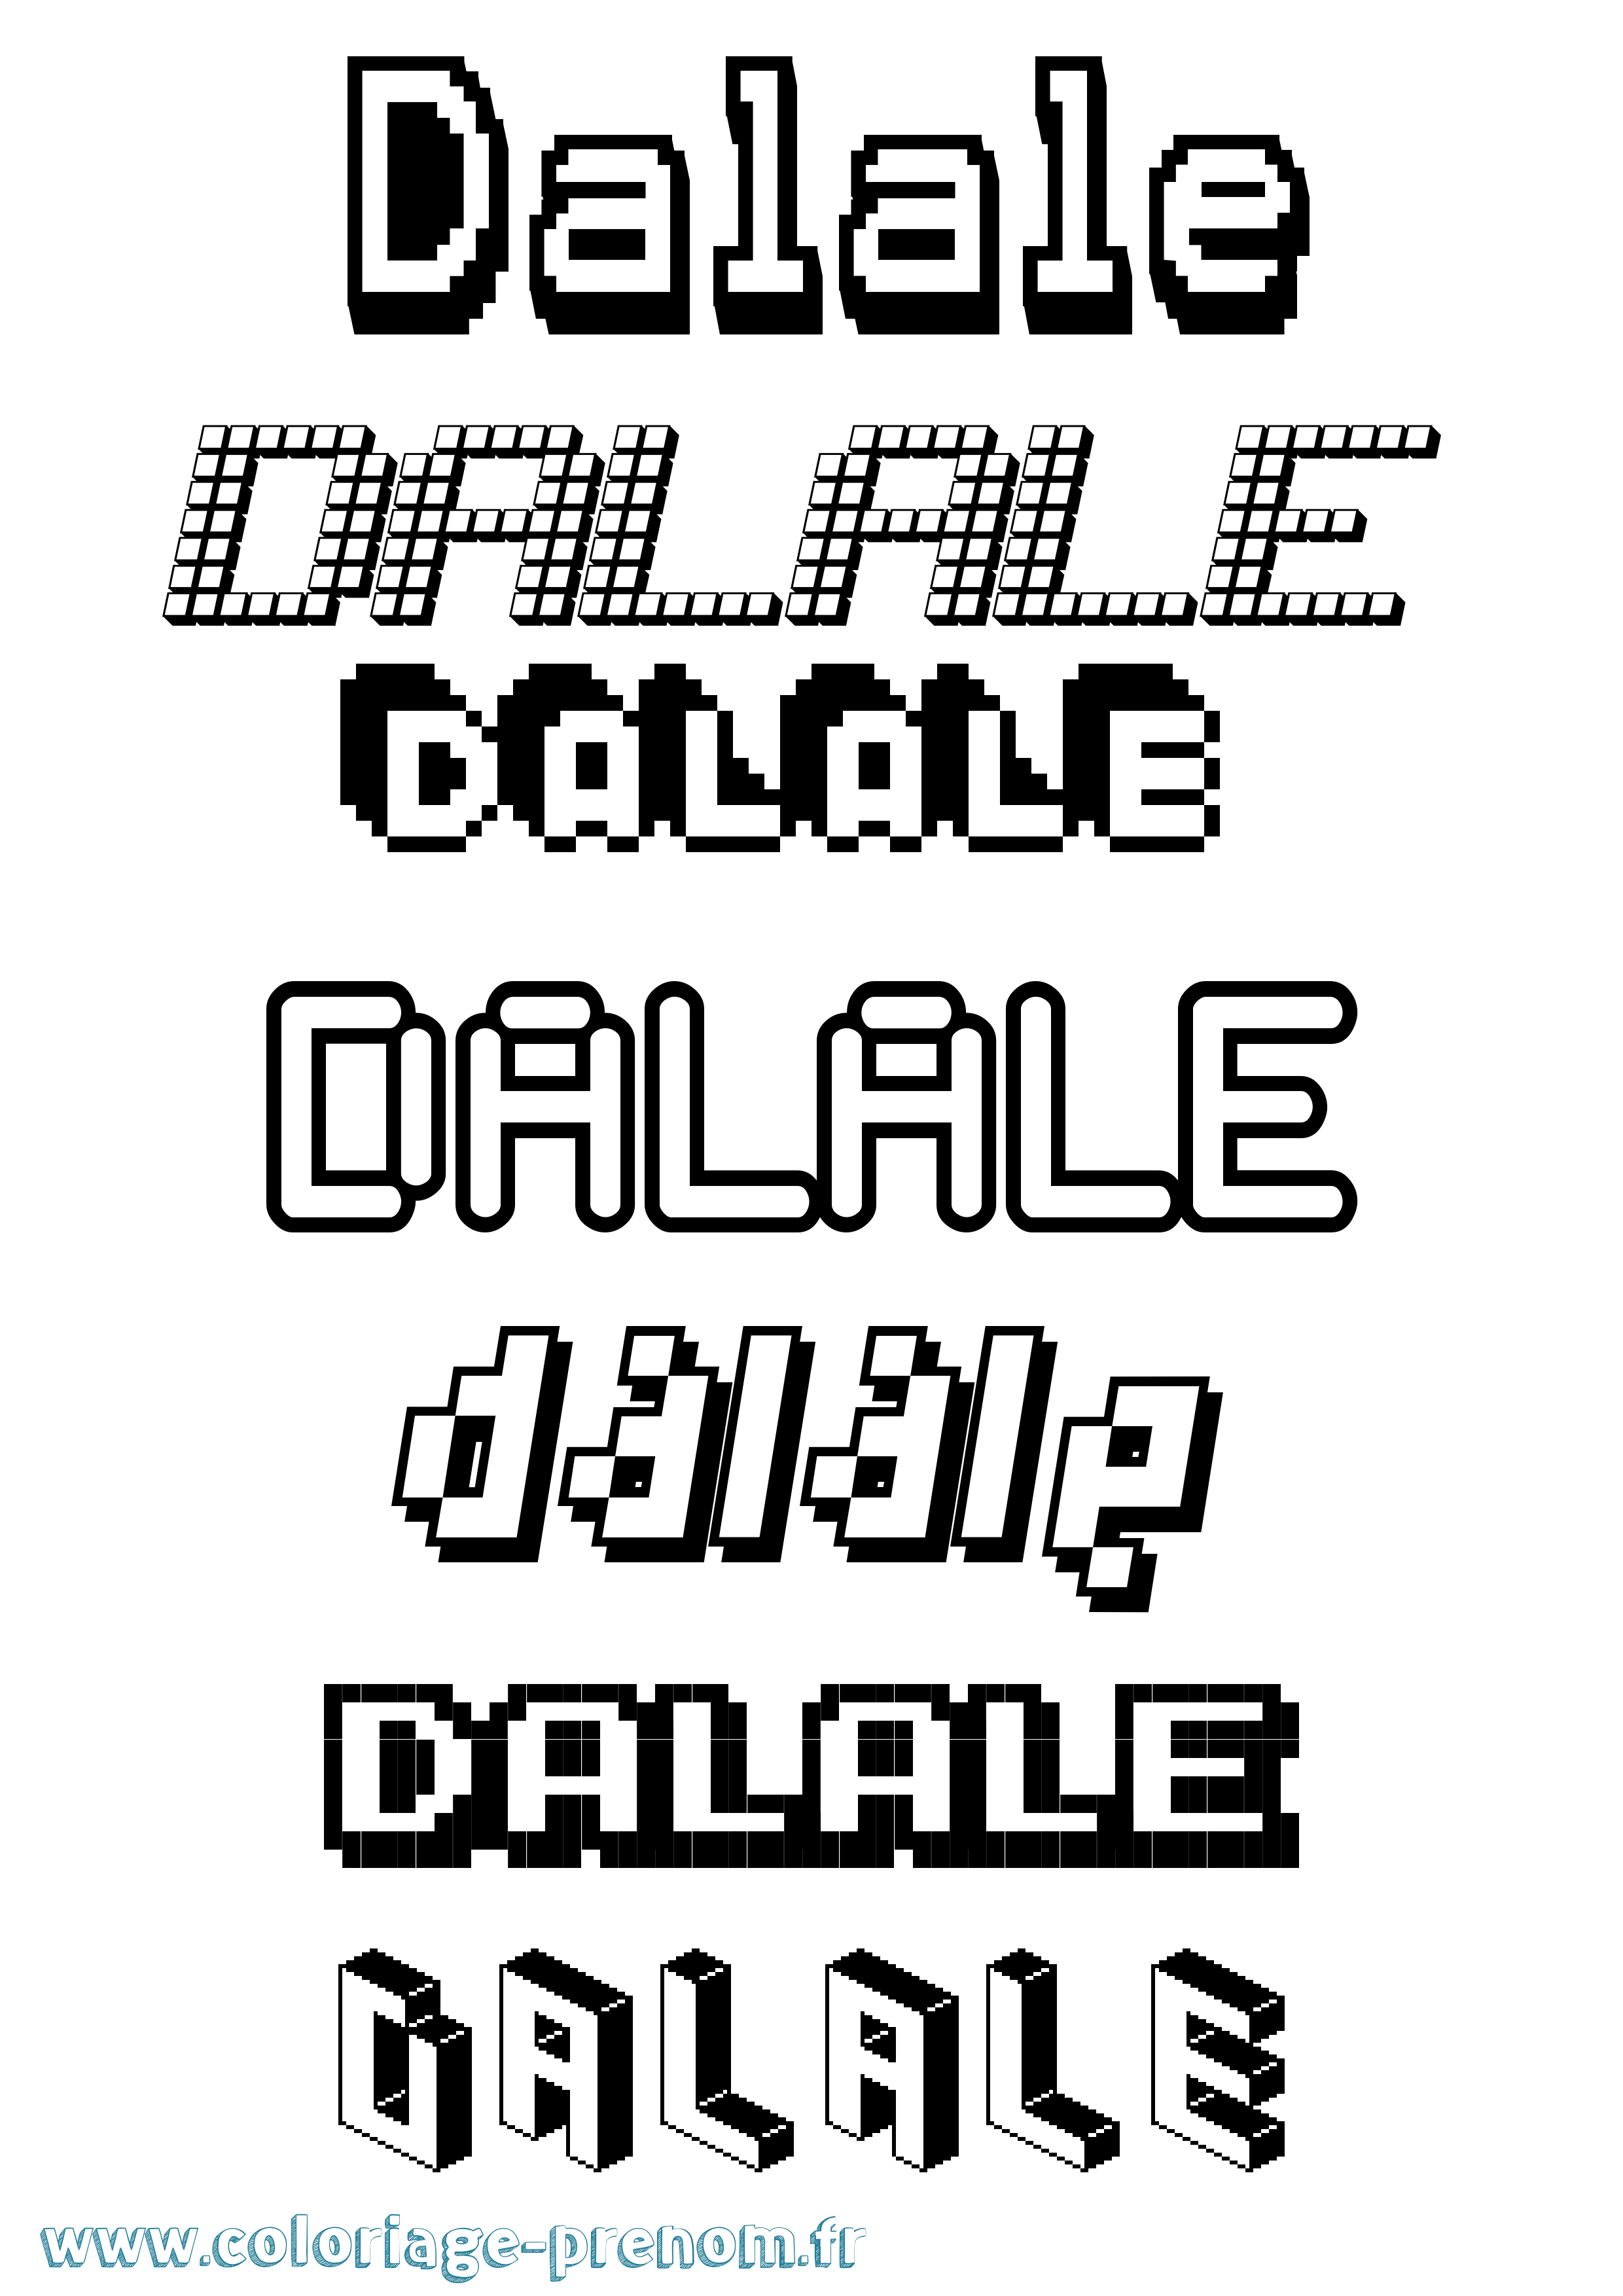 Coloriage prénom Dalale Pixel